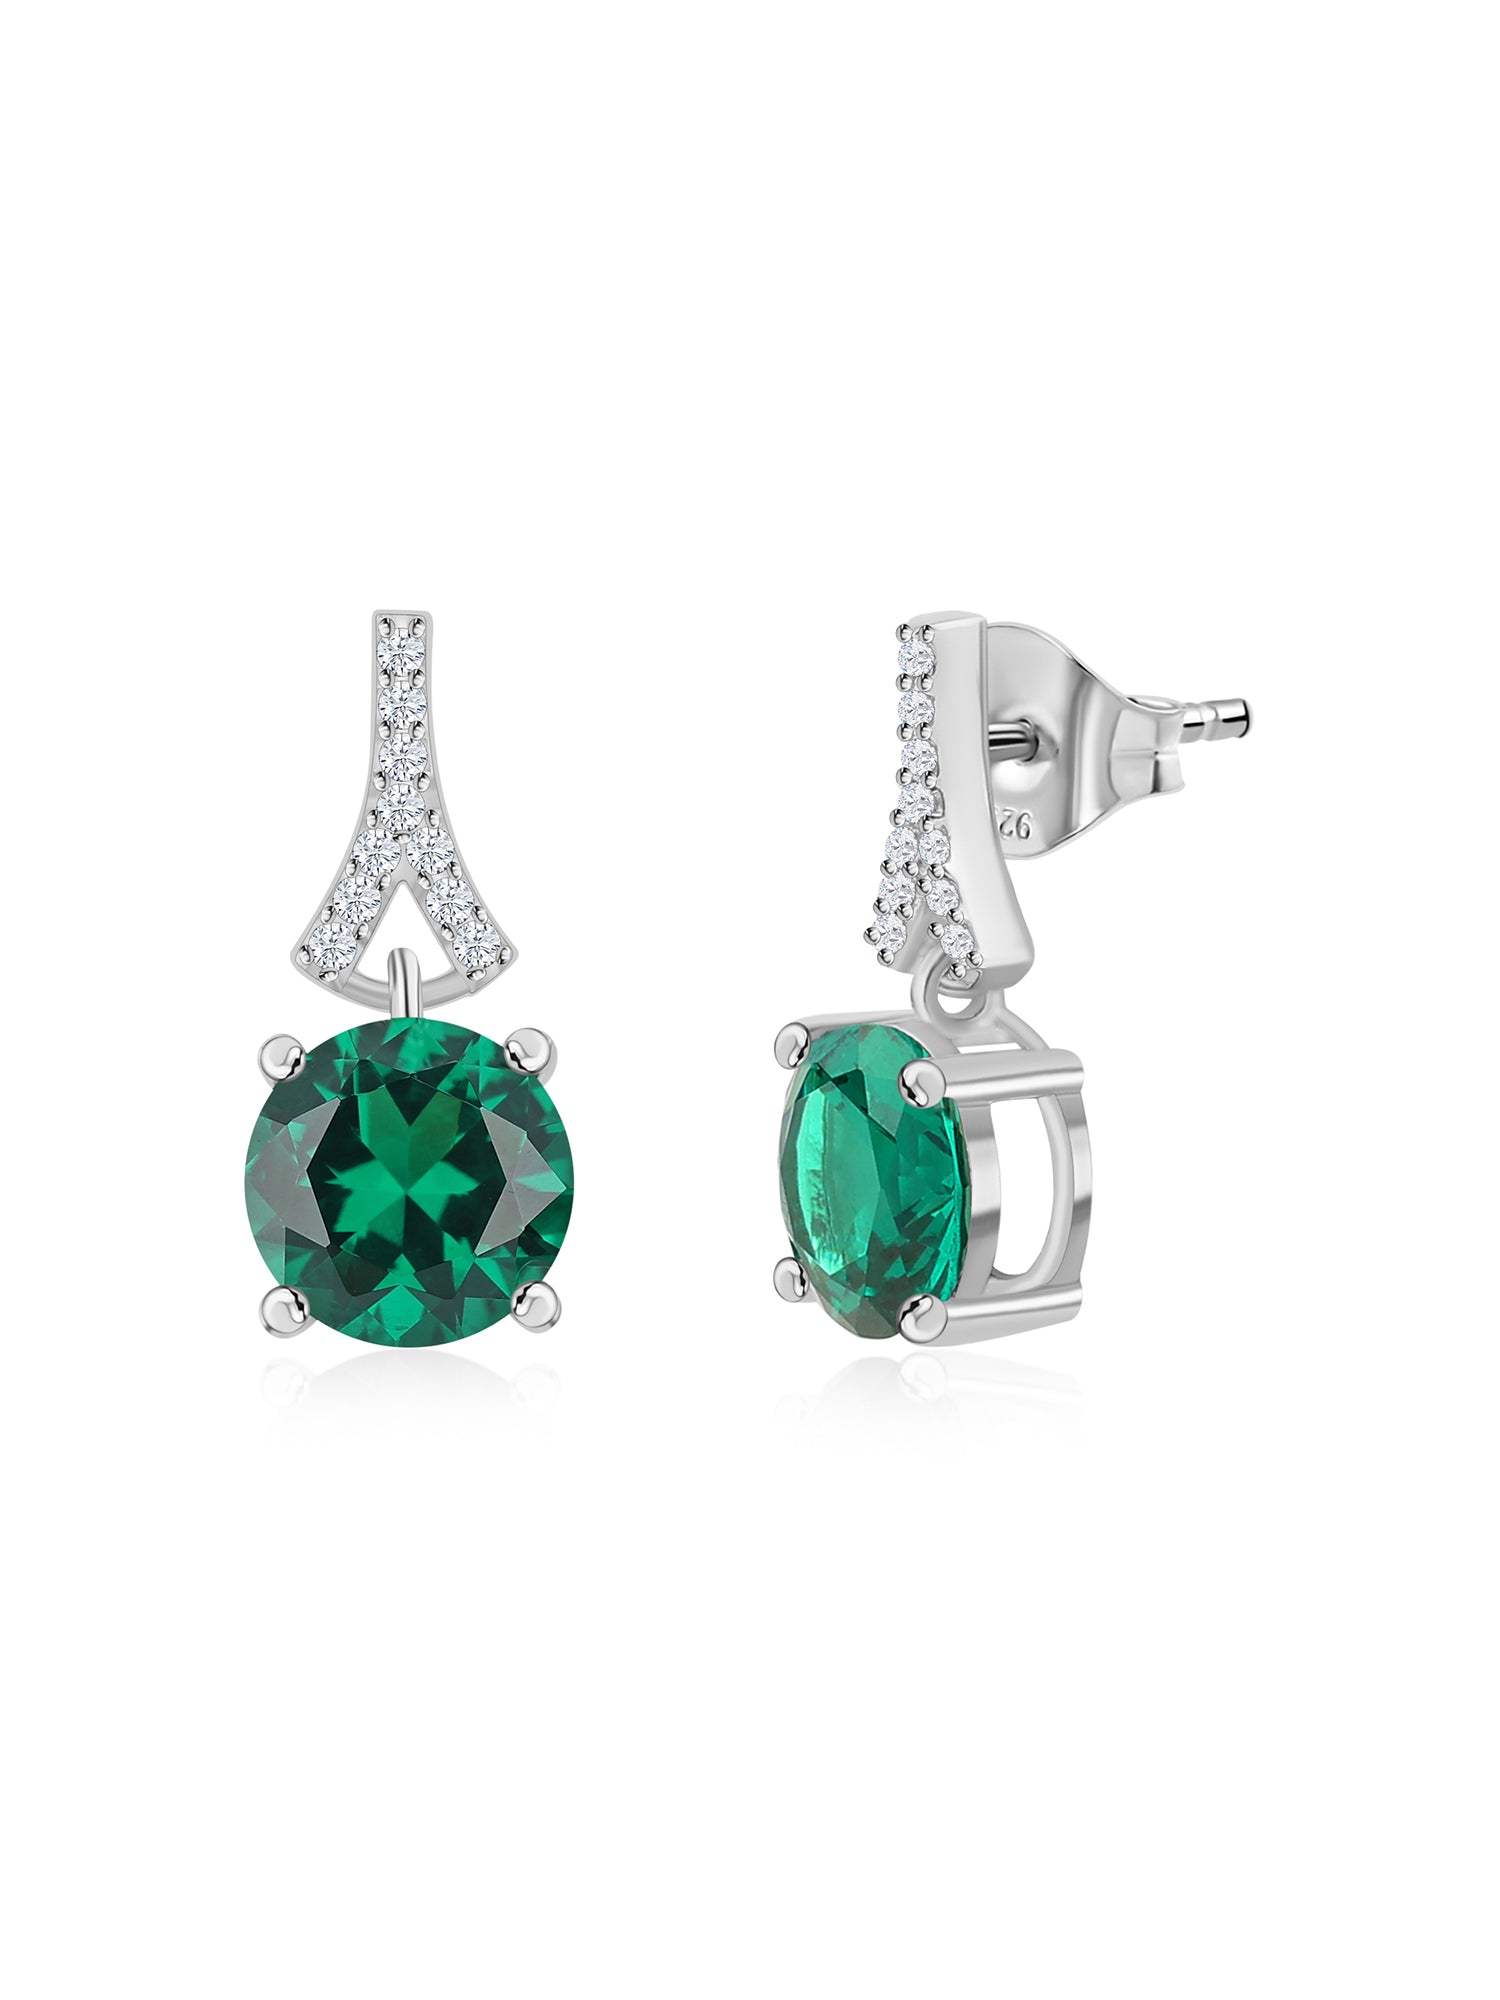 2 Carat Emerald stud Earrings For Women